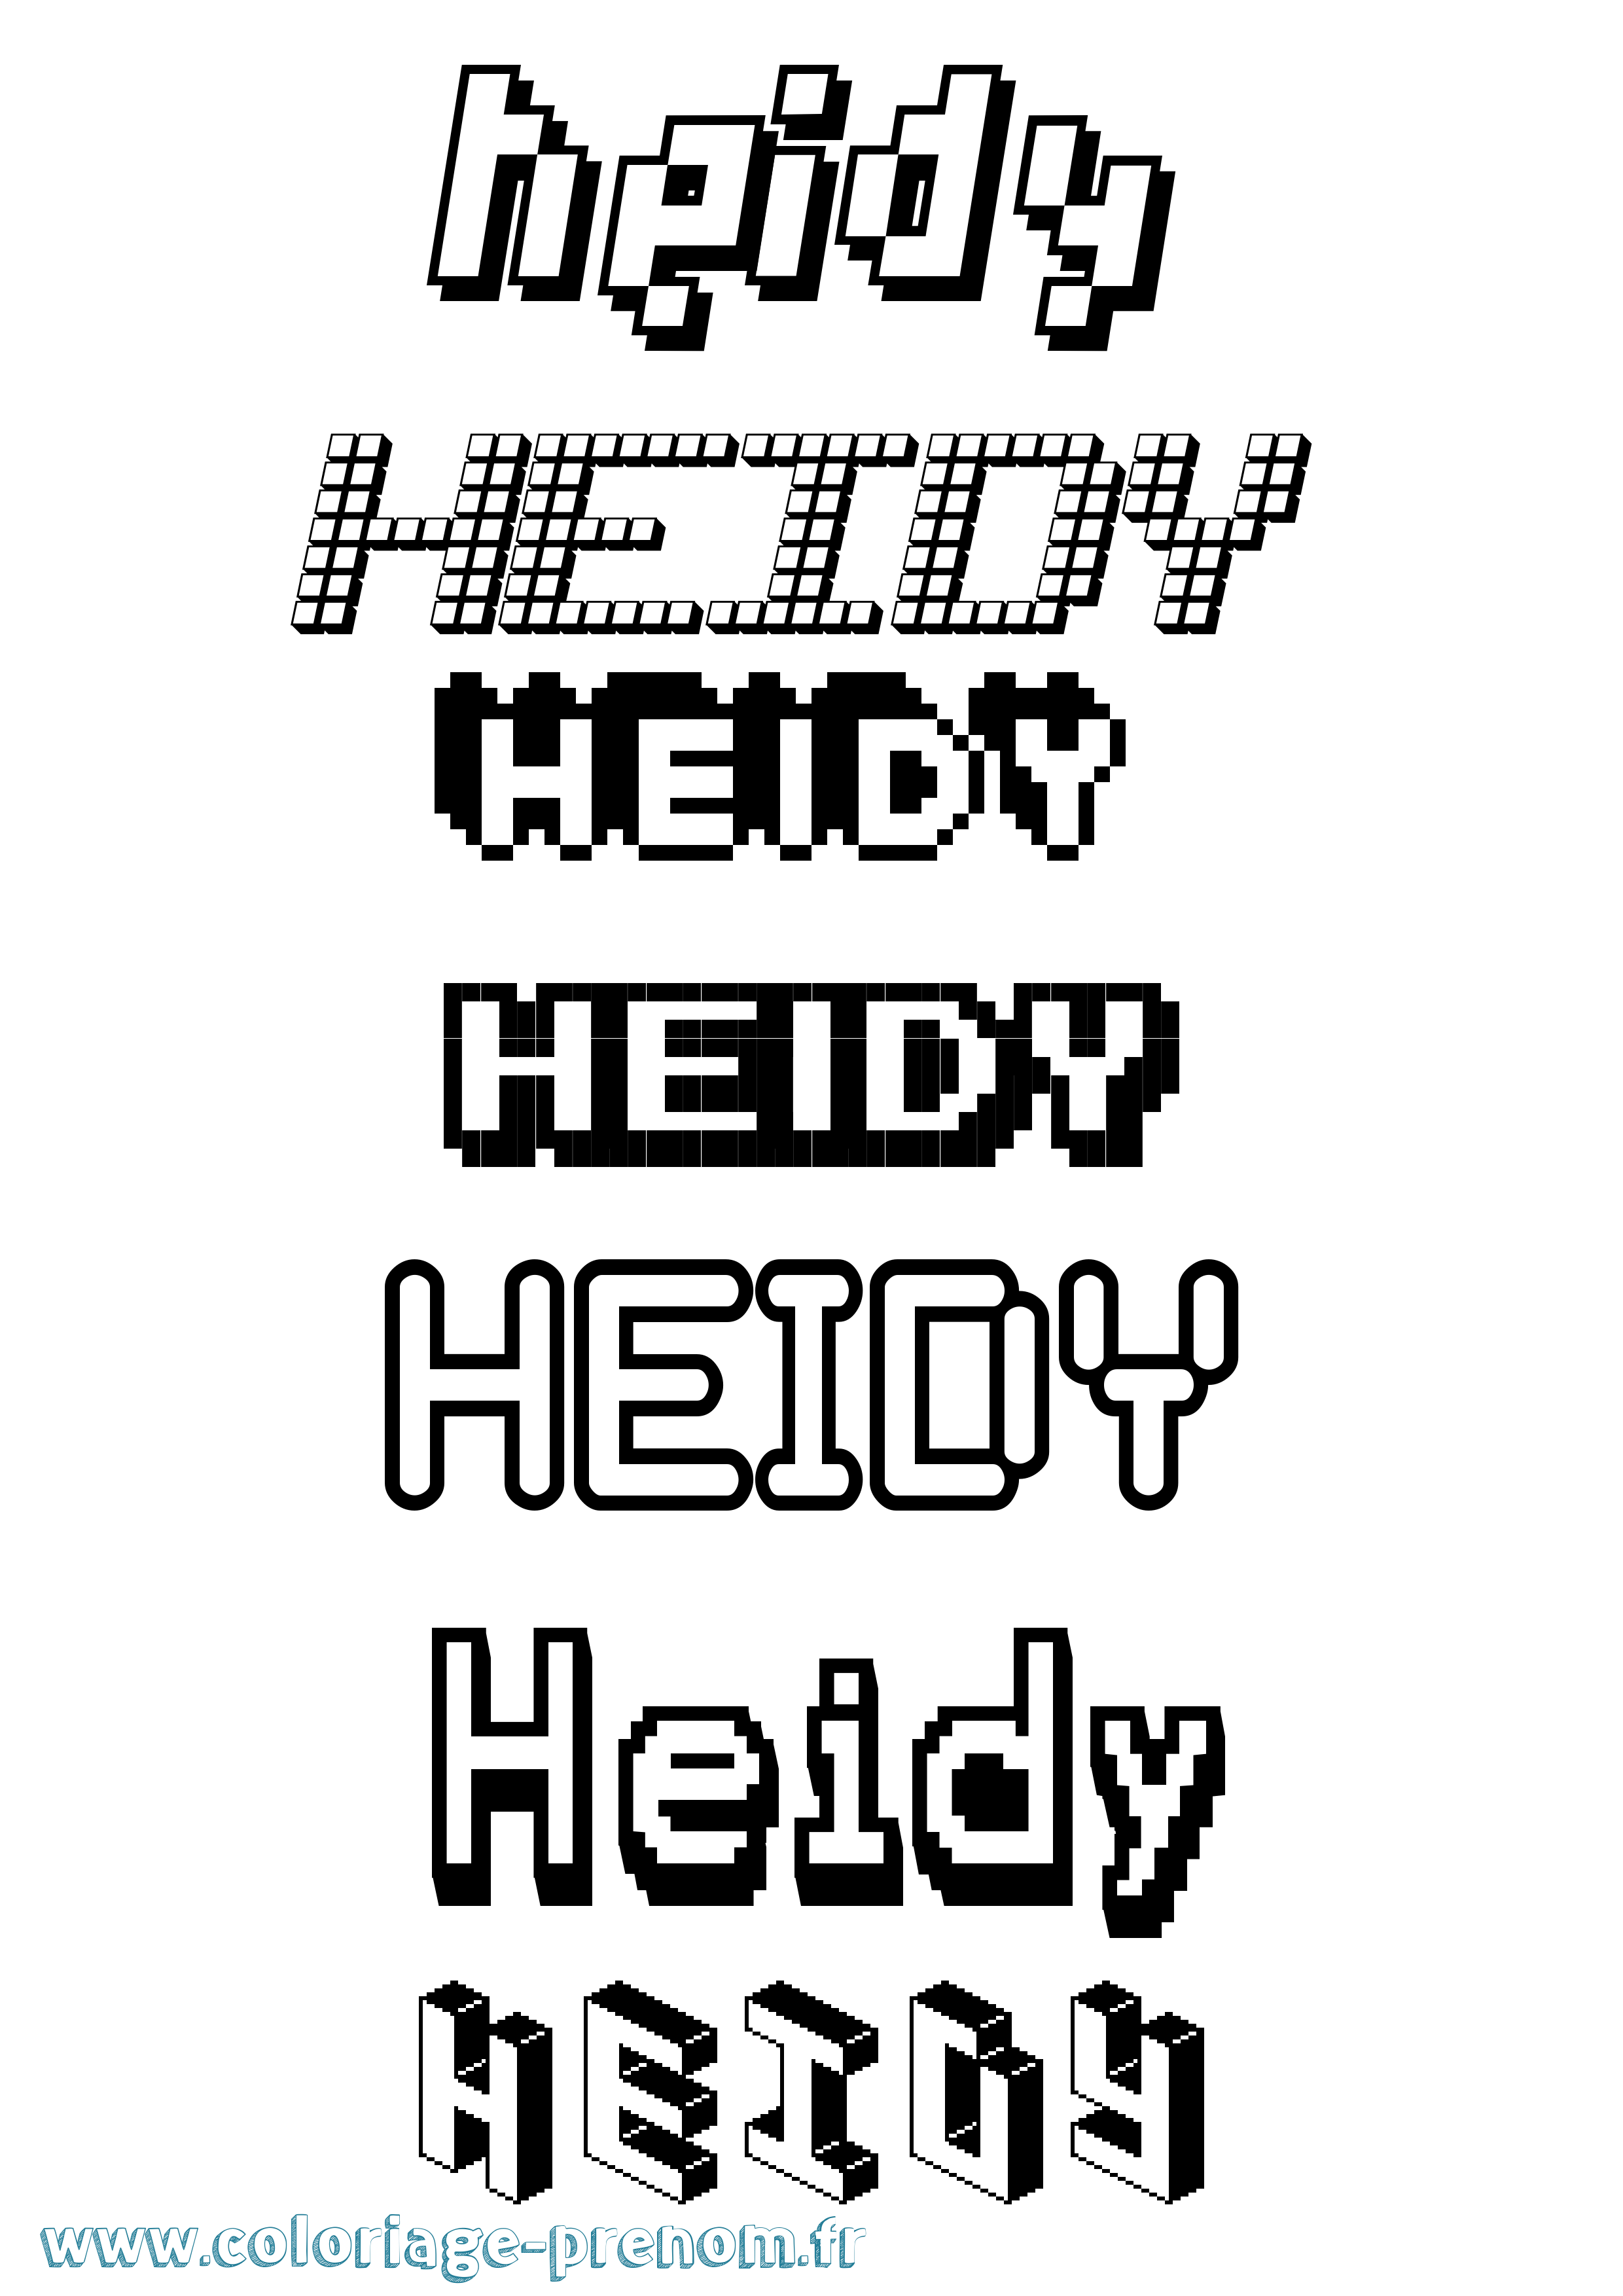 Coloriage prénom Heidy Pixel